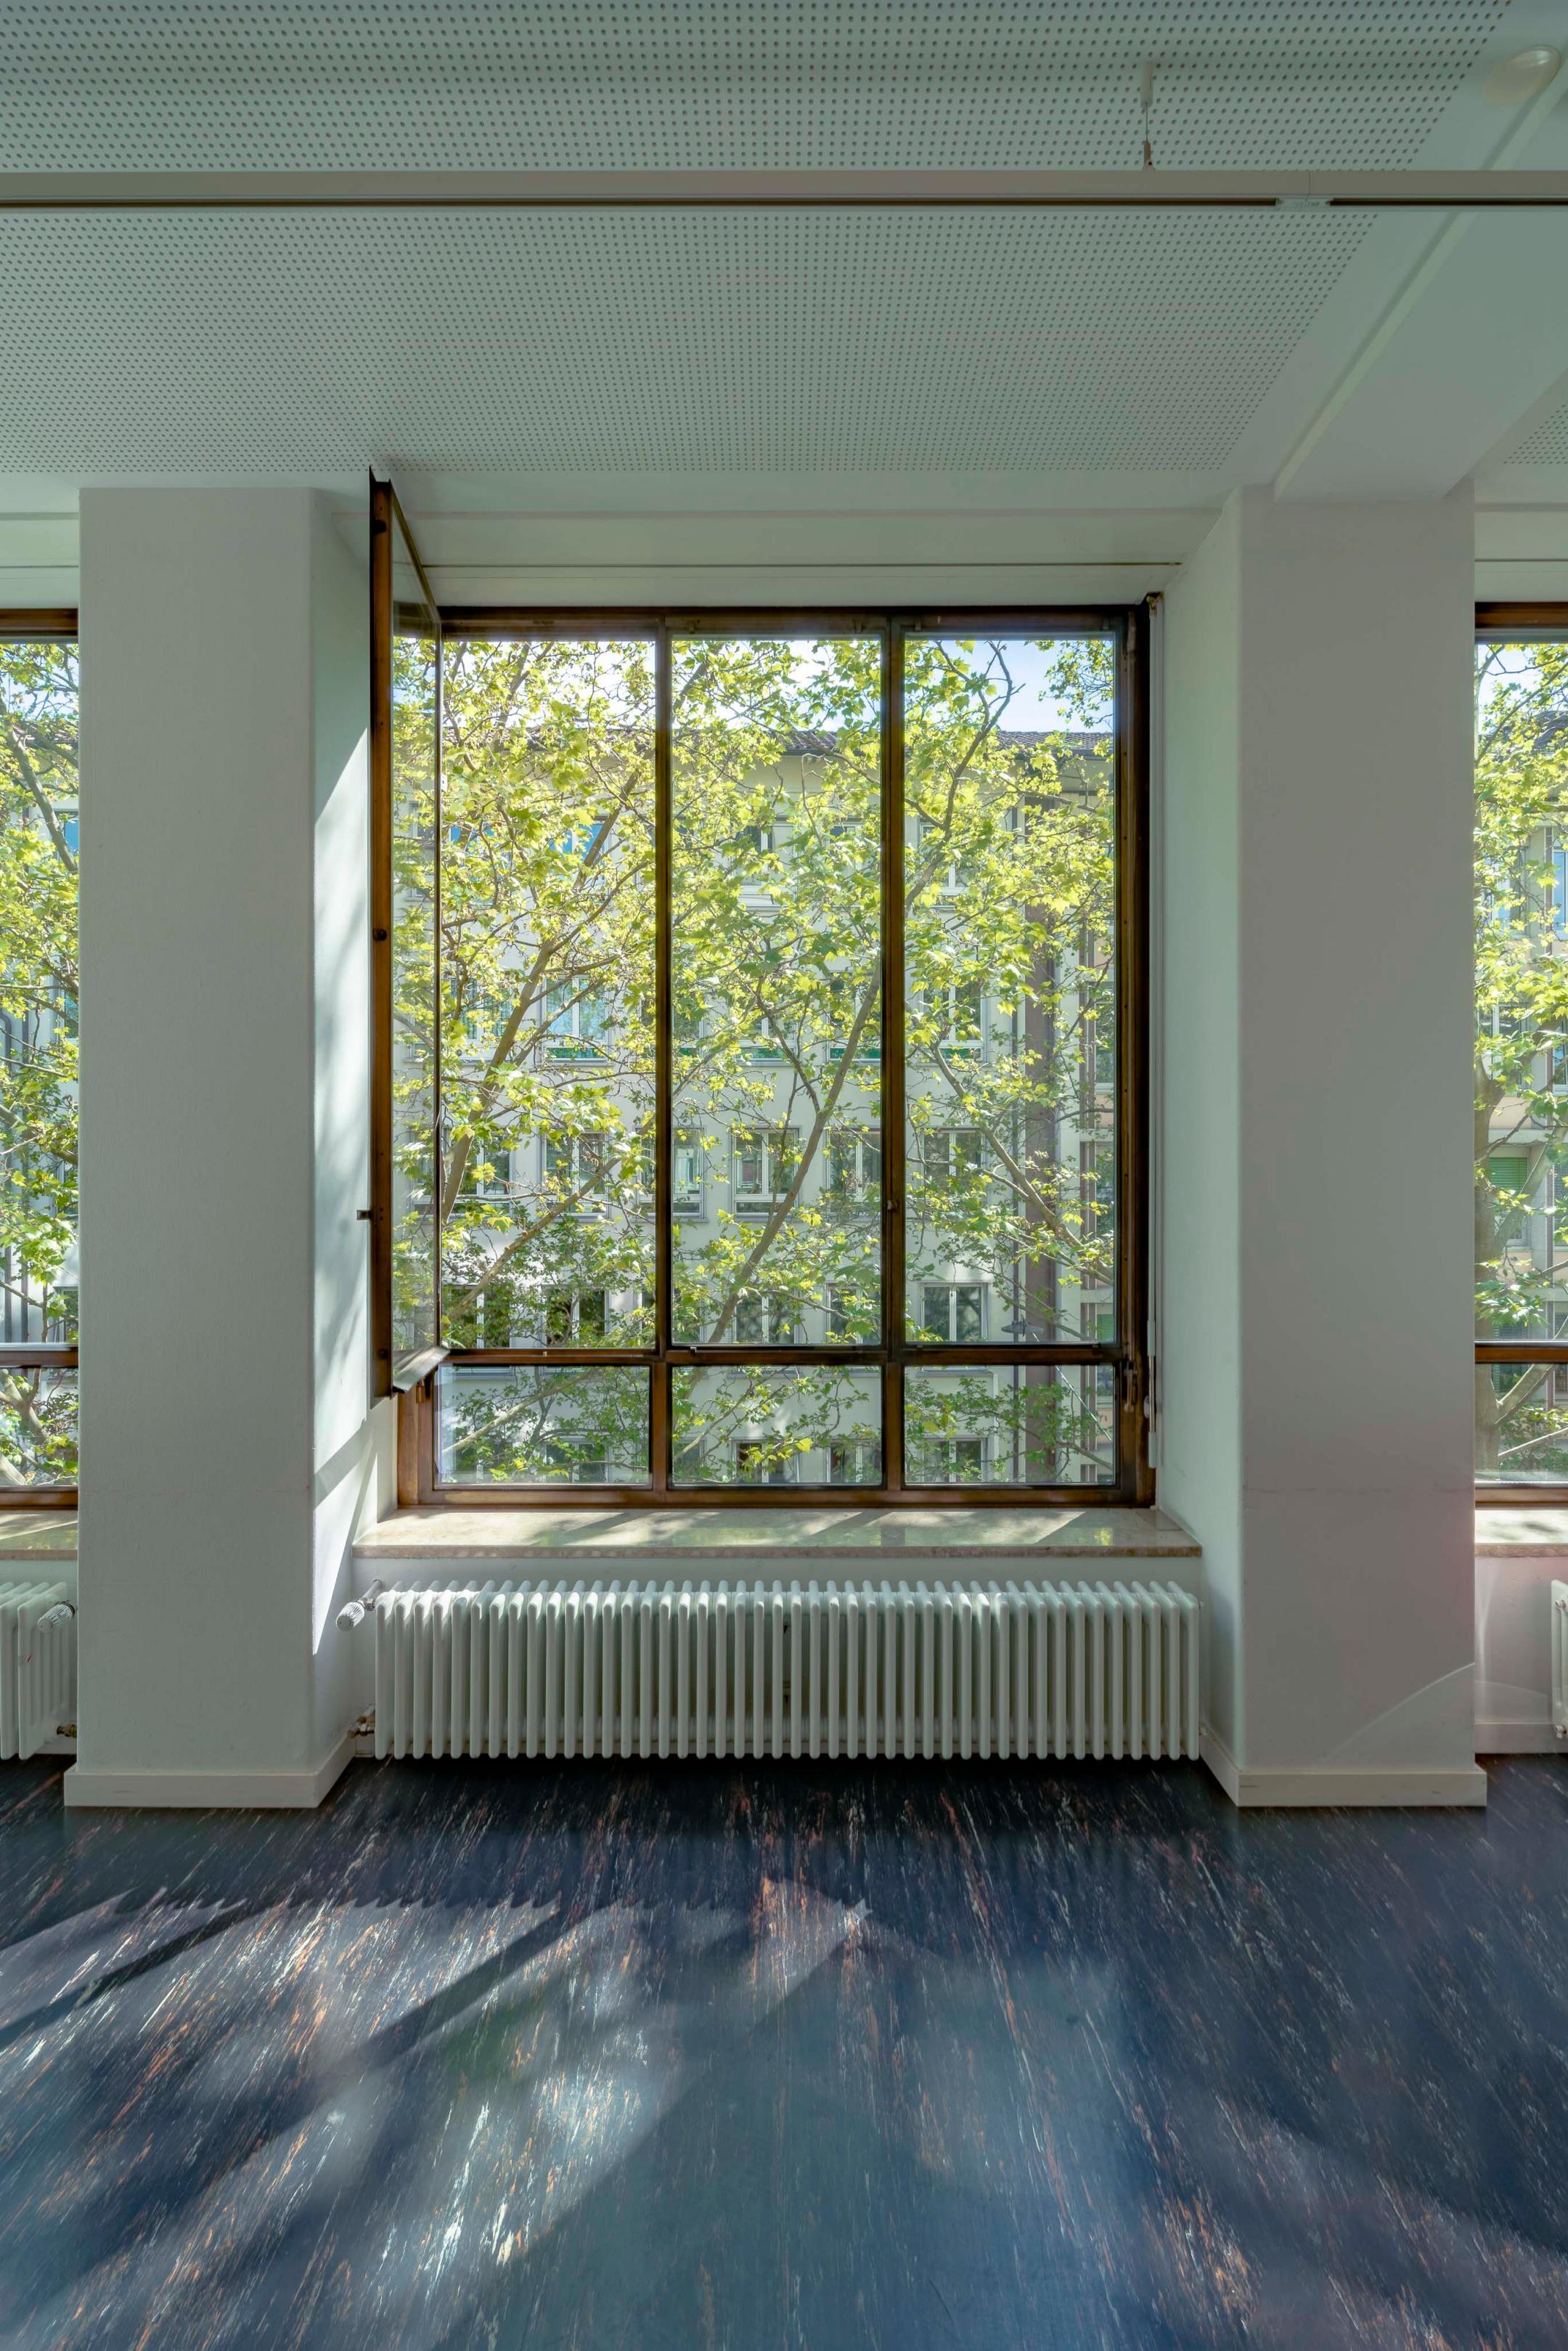 Fenster von innen des Kaspar-Escher-Hauses